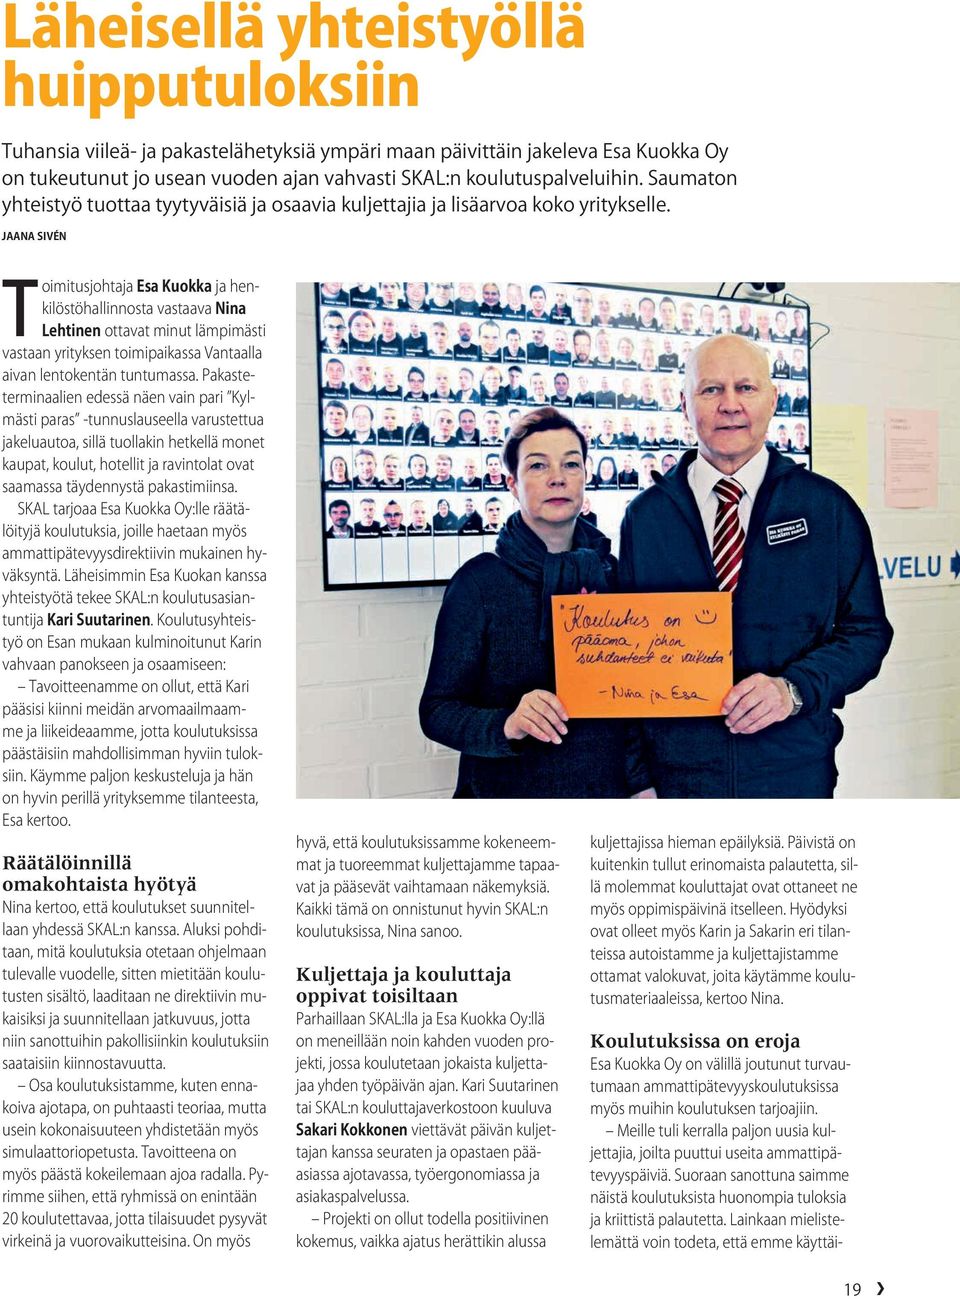 Jaana Sivén Toimitusjohtaja Esa Kuokka ja henkilöstöhallinnosta vastaava Nina Lehtinen ottavat minut lämpimästi vastaan yrityksen toimipaikassa Vantaalla aivan lentokentän tuntumassa.